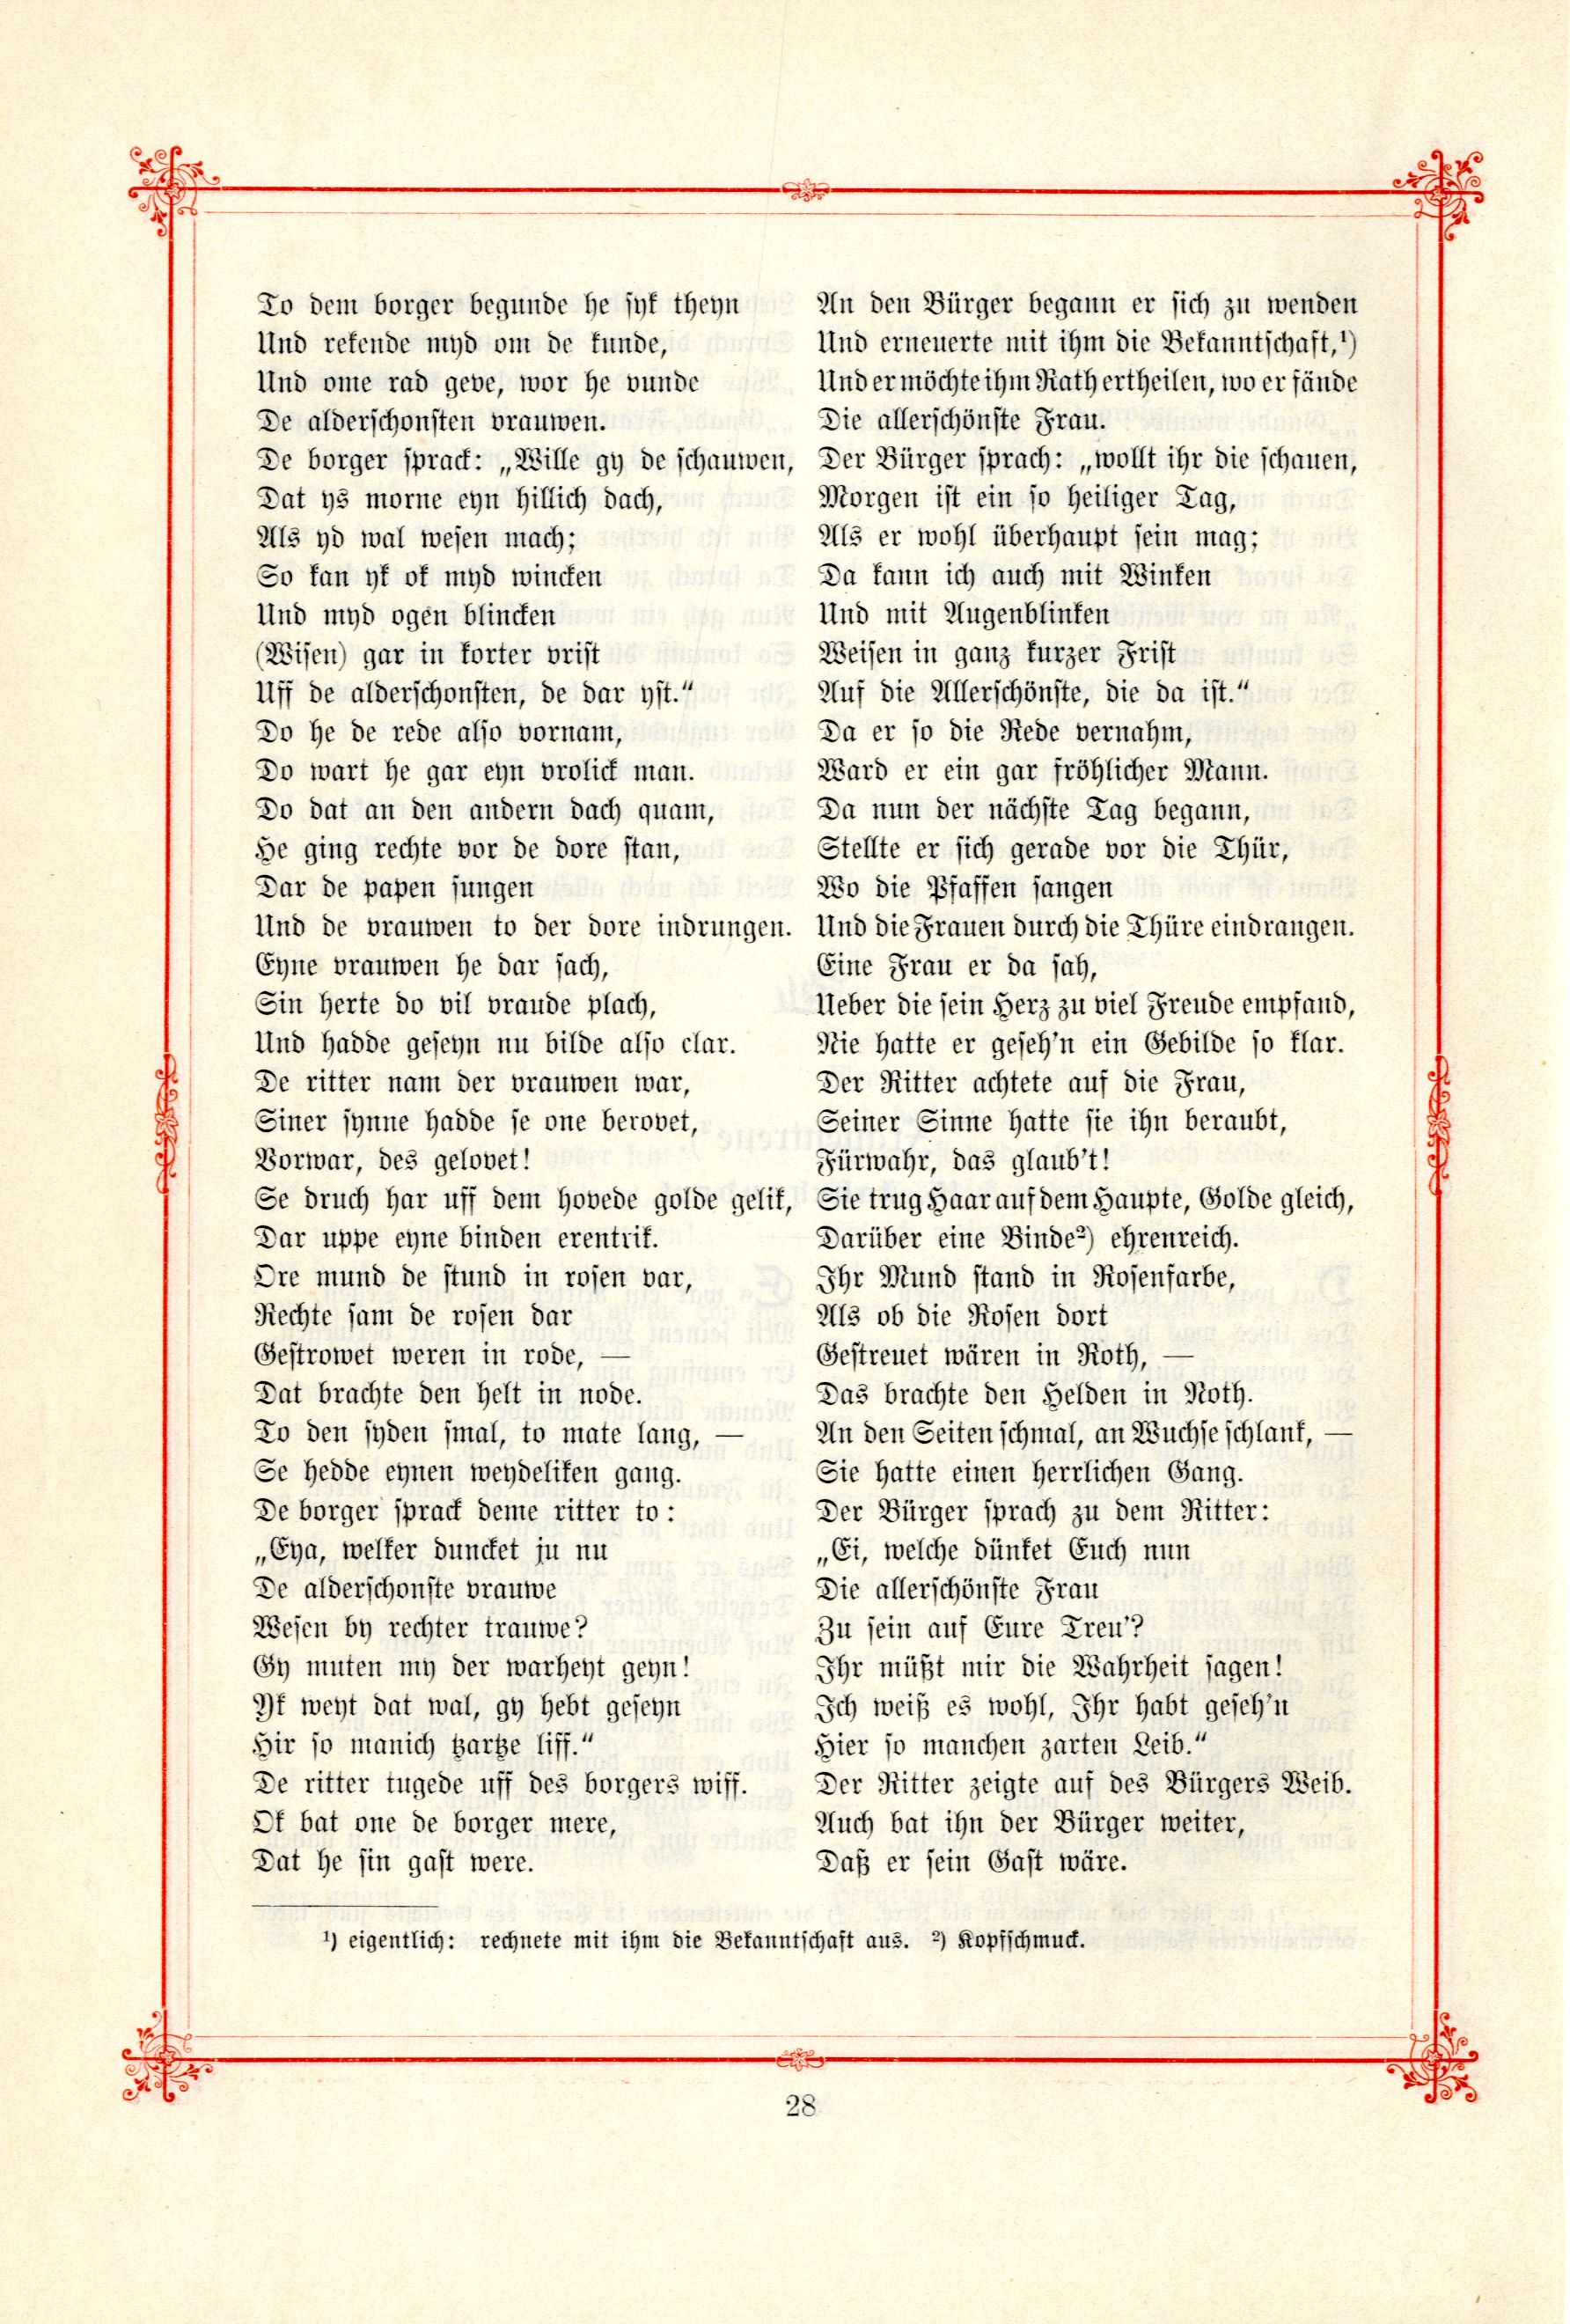 Das Baltische Dichterbuch (1895) | 74. (28) Main body of text